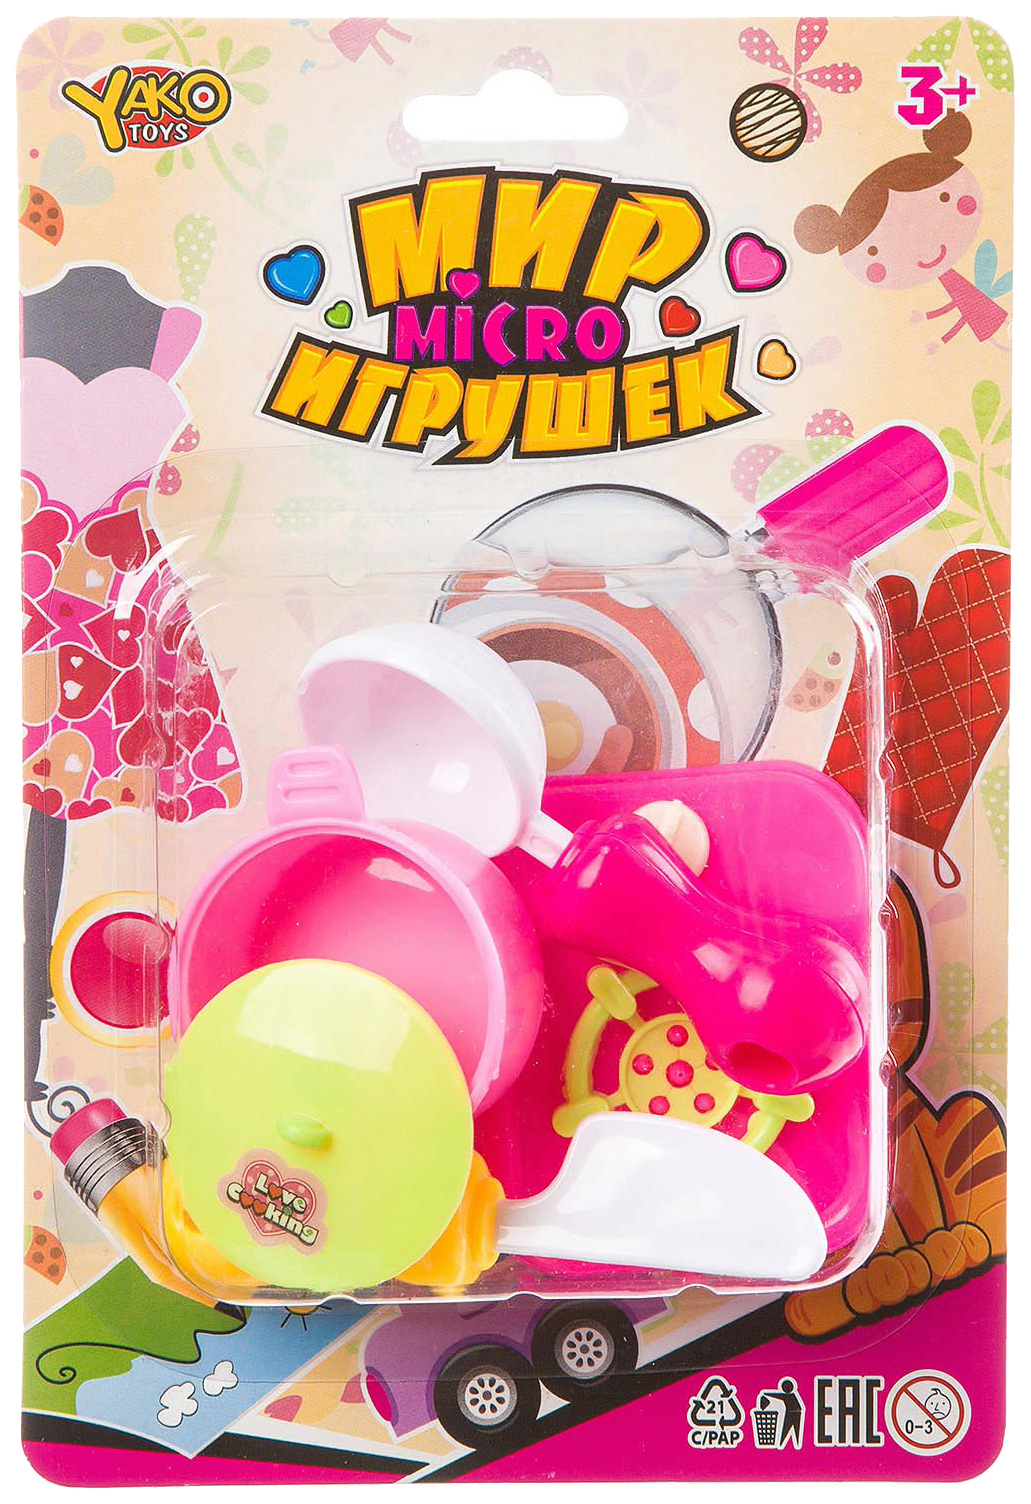 фото Игрушечная посуда yako toys кухня- готовим обед 5 пр. мир micro игрушек д93789-gw